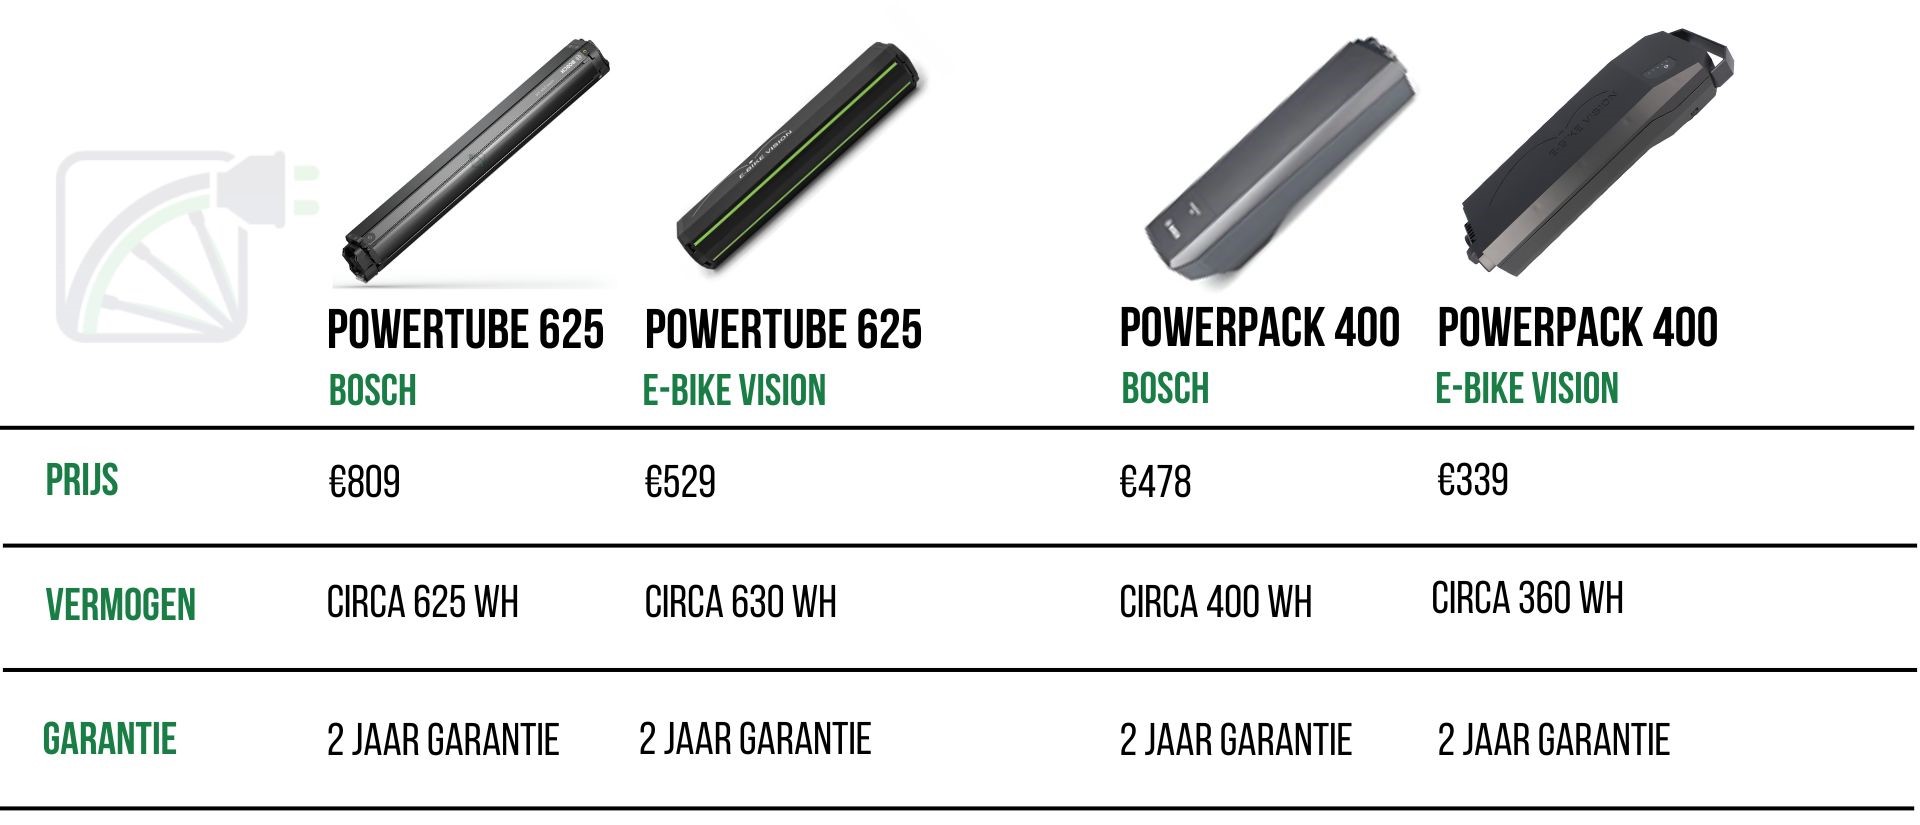 vergelijkingstabel tussen bosch powertube 625, e-bike vision powertube 625, bosch powerpack 400 en e-bike vision powerpack 400 op de volgende punten: prijs, vermogen en garantie.